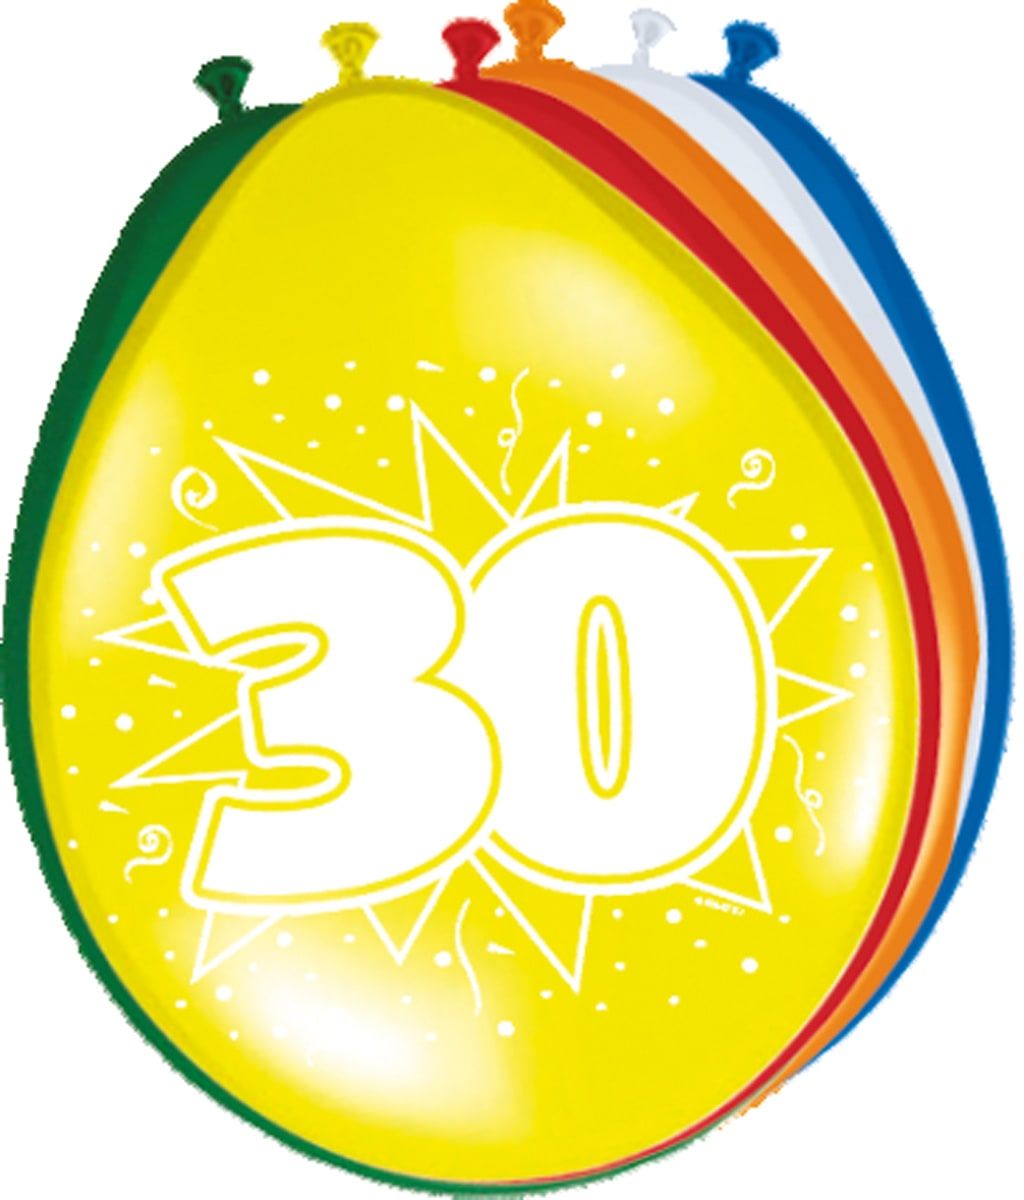 Verjaardag 30 jaar ballonnen 8 stuks